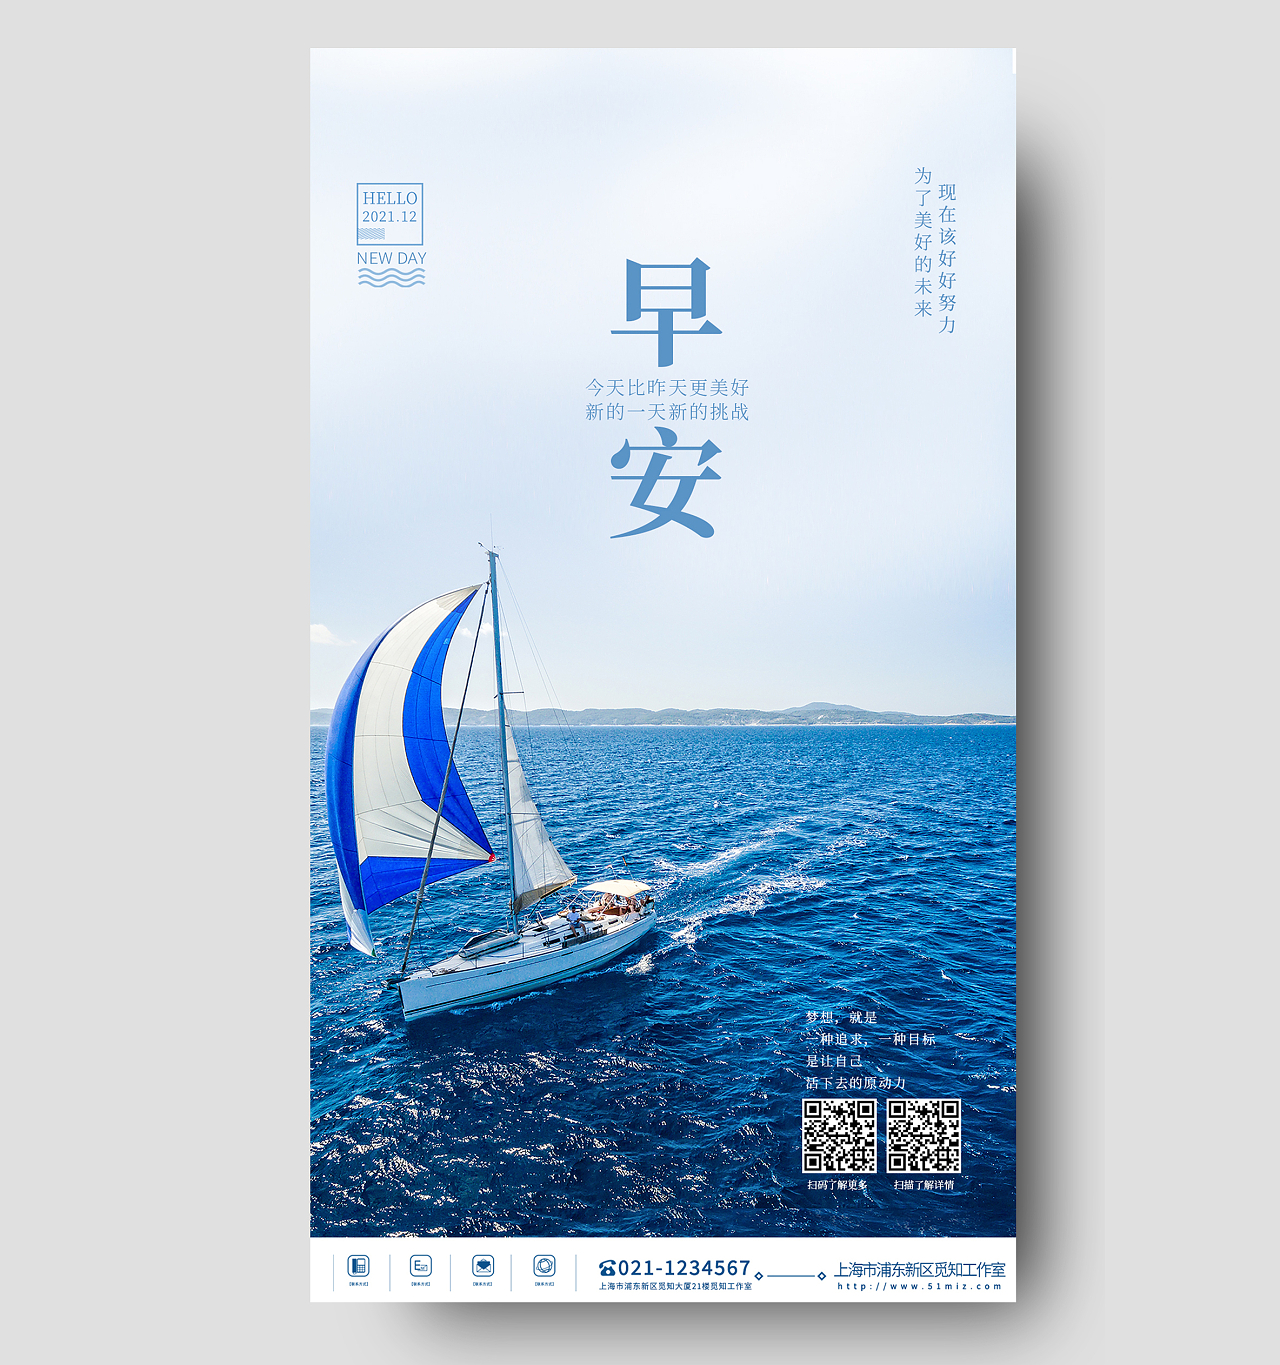 蓝色励志意境奋斗梦想帆船风景早安海报ui手机海报